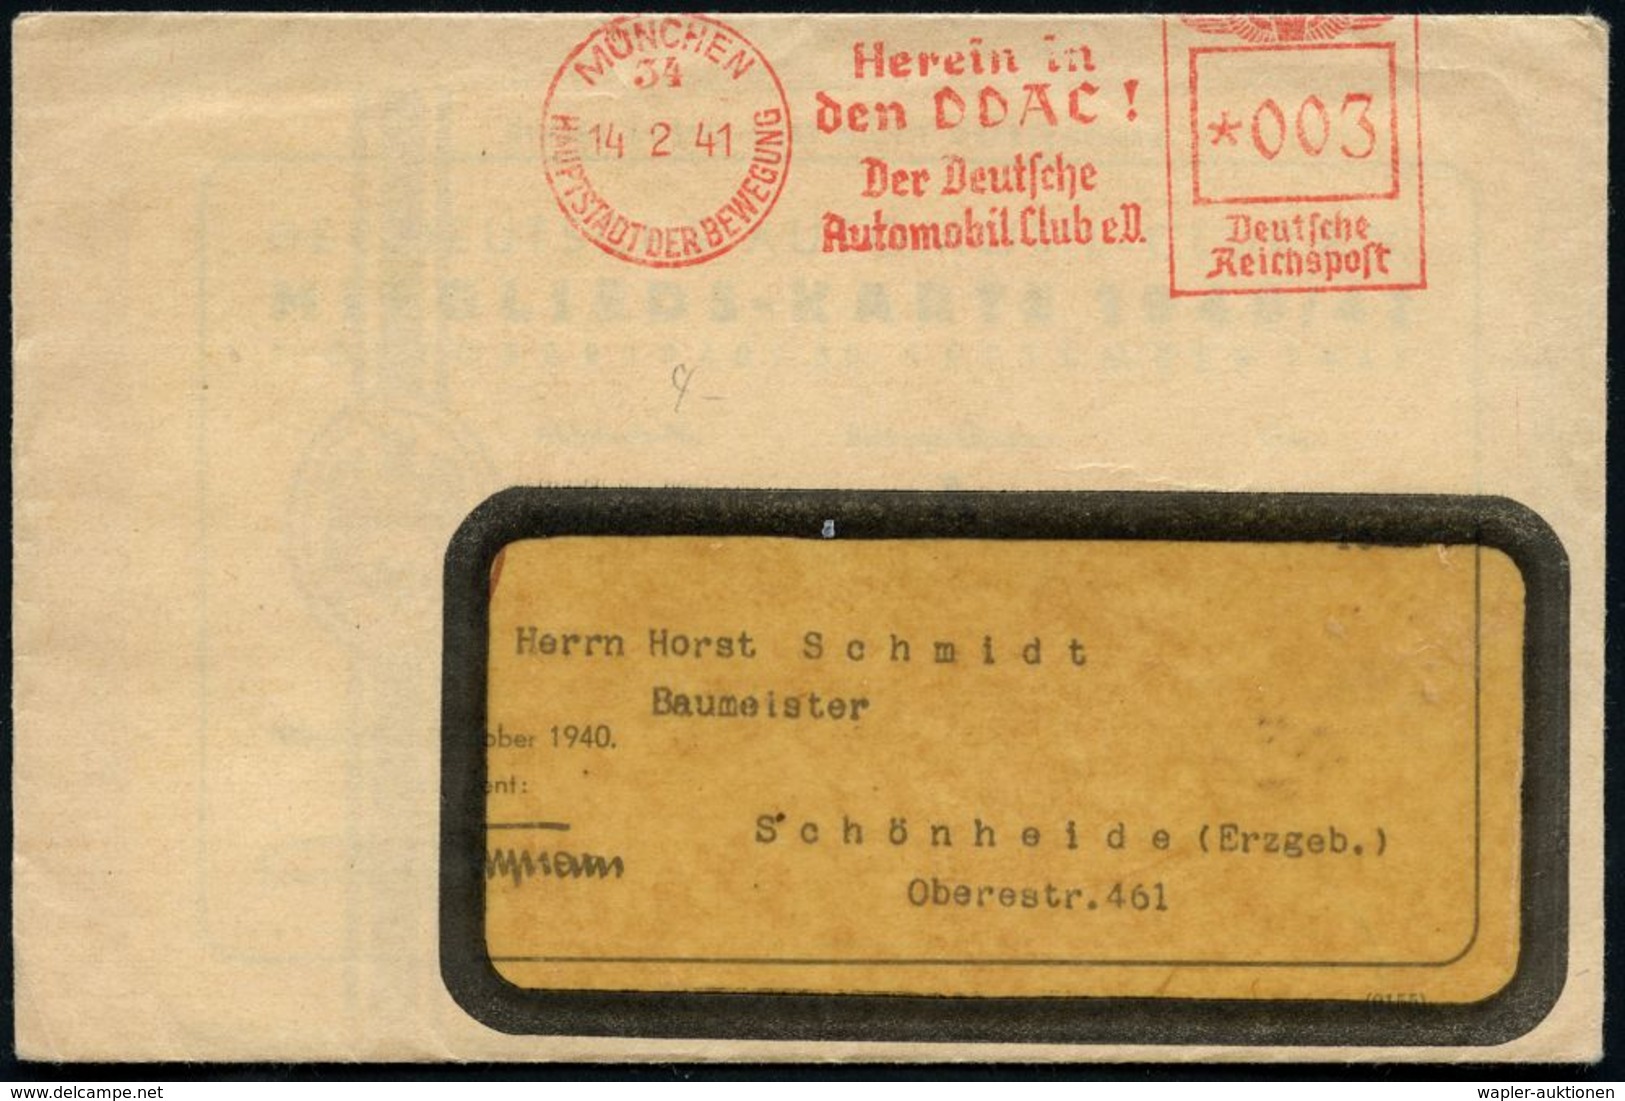 MÜNCHEN/ 34/ HDB/ Herein In/ Den DDAC!/ Der Deutsche/ Automobil Club EV. 1941 (14.2.) AFS Auf Fernbf. Mit Inhalt: Mitgli - Auto's